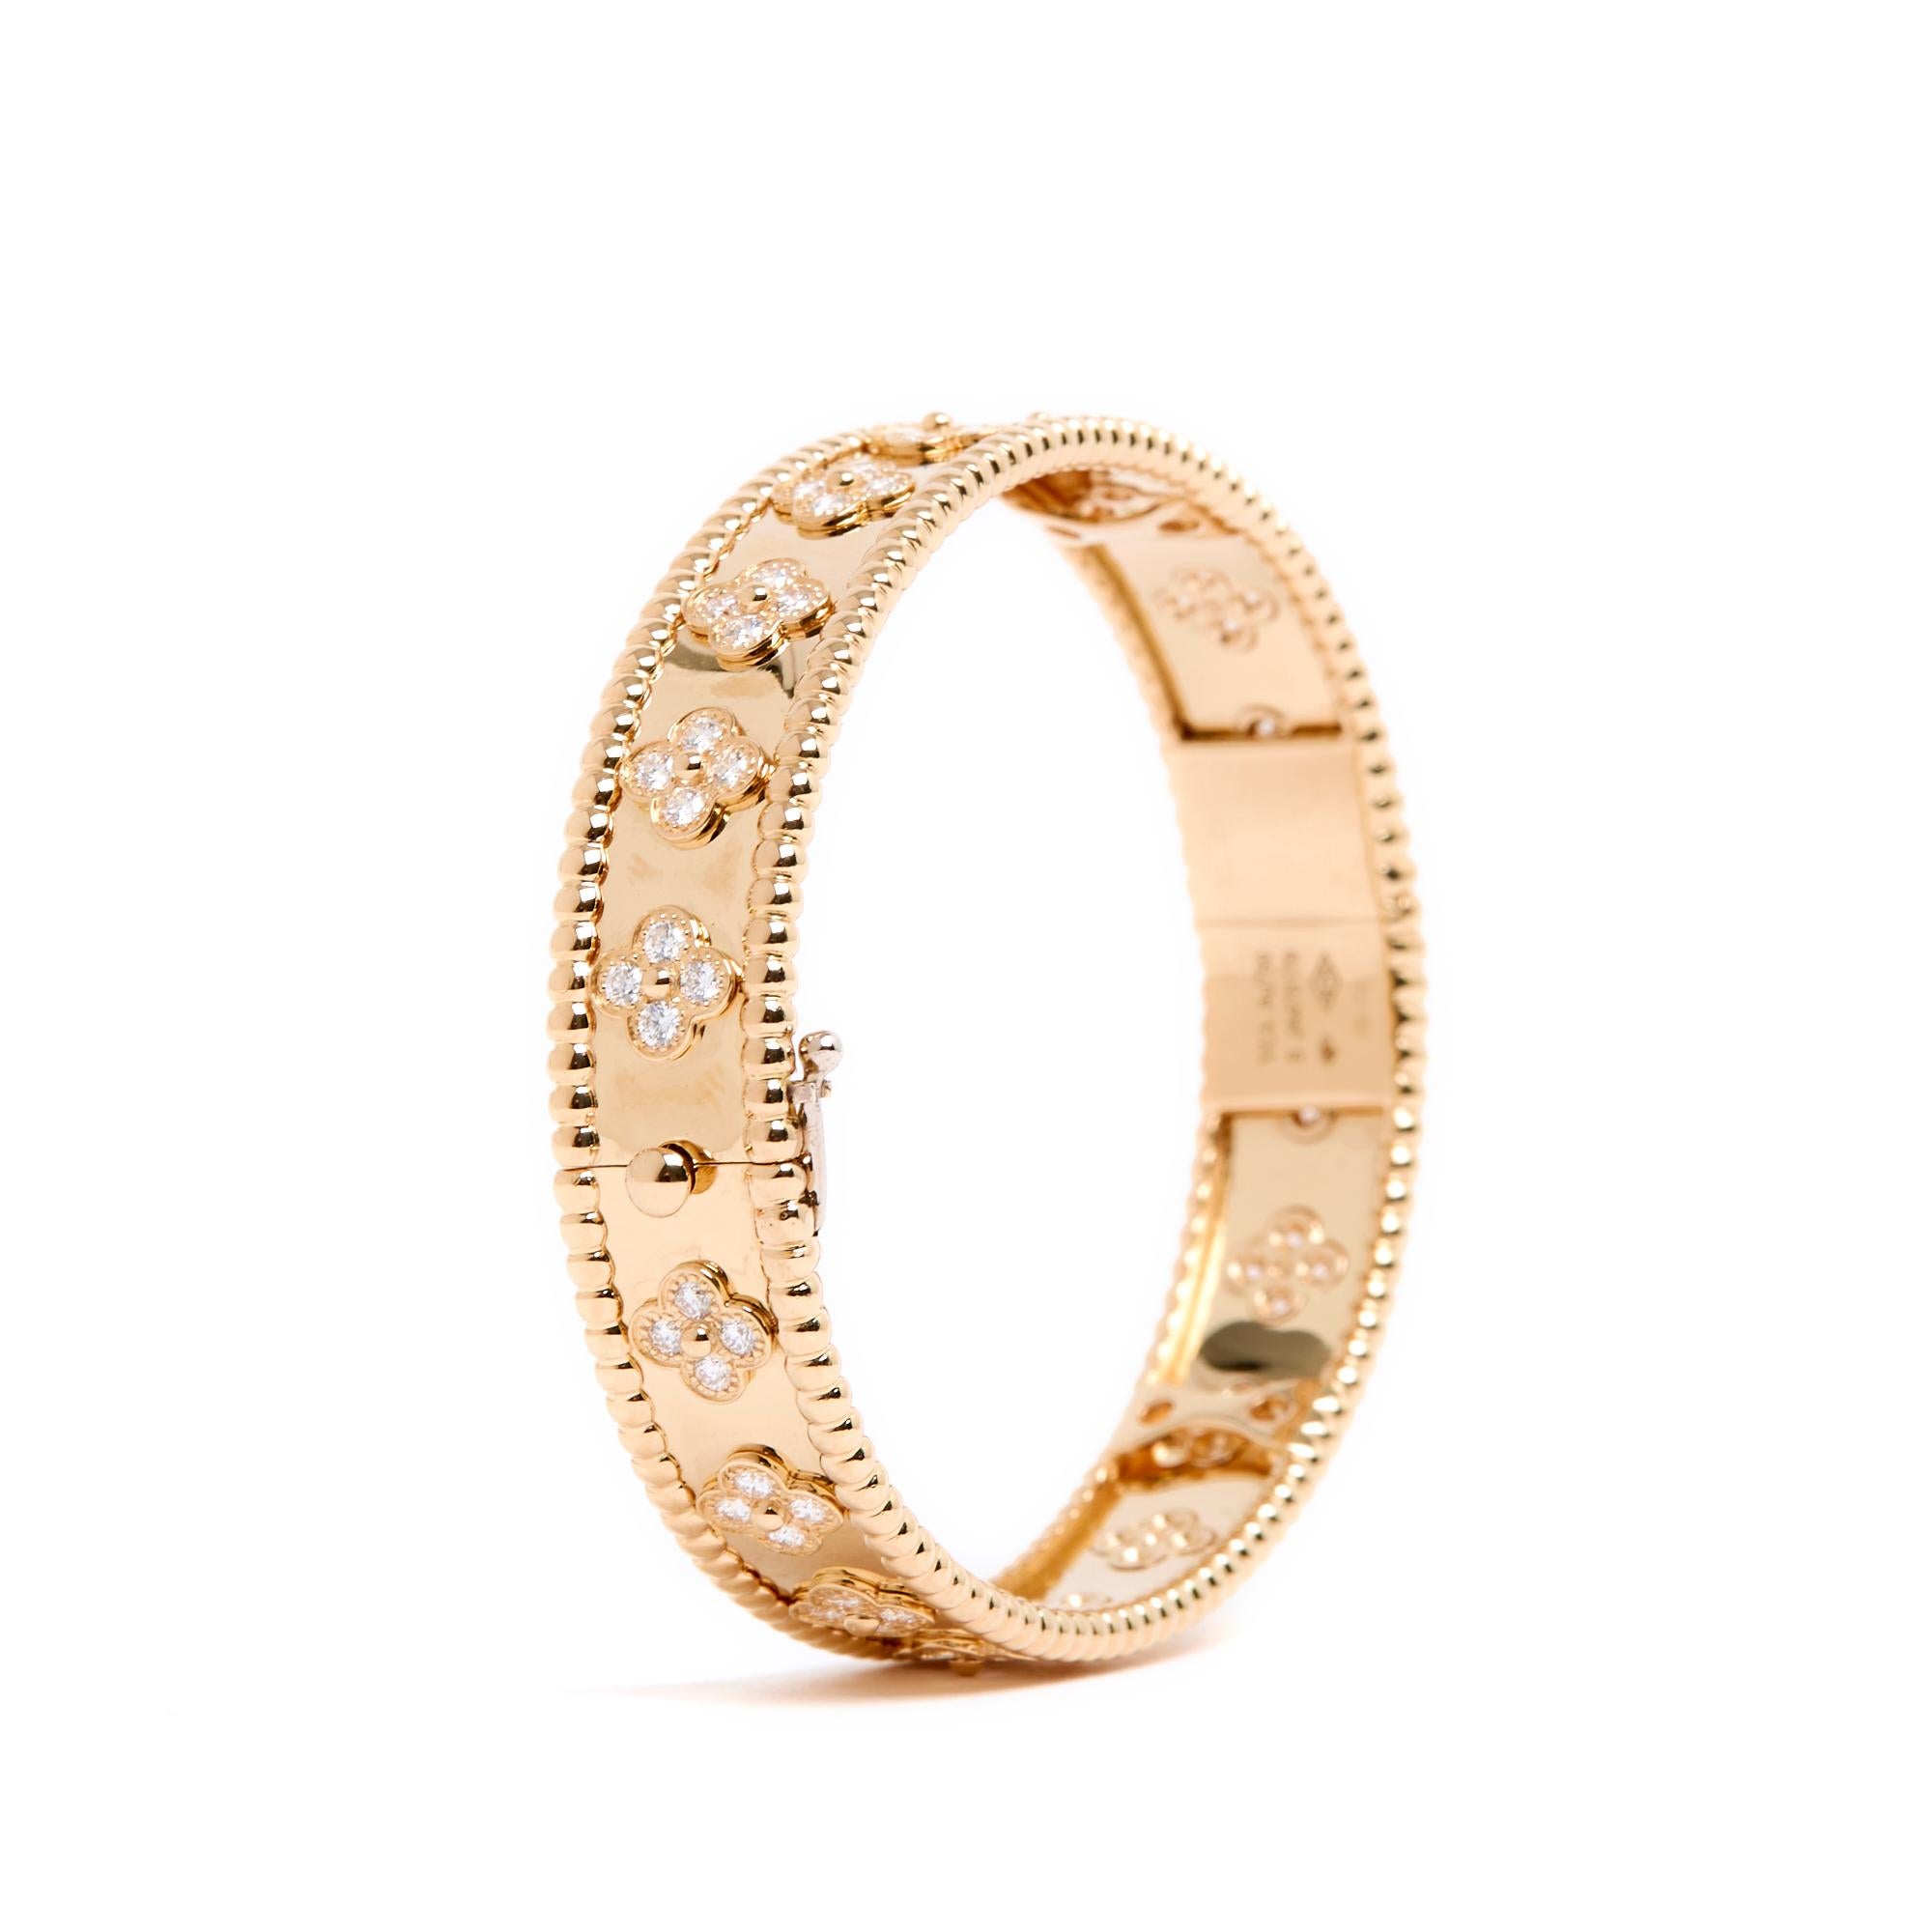 Bracelet Van Cleef & Arpels Perlée Trèfles (ou Alhambra), moyen modèle, en or jaune et diamants (80 au total pour 1,78 carats), fermoir à cliquet invisible également en or jaune. Taille S pour un poignet de 16 cm, largeur du bracelet 1,1 cm. Le